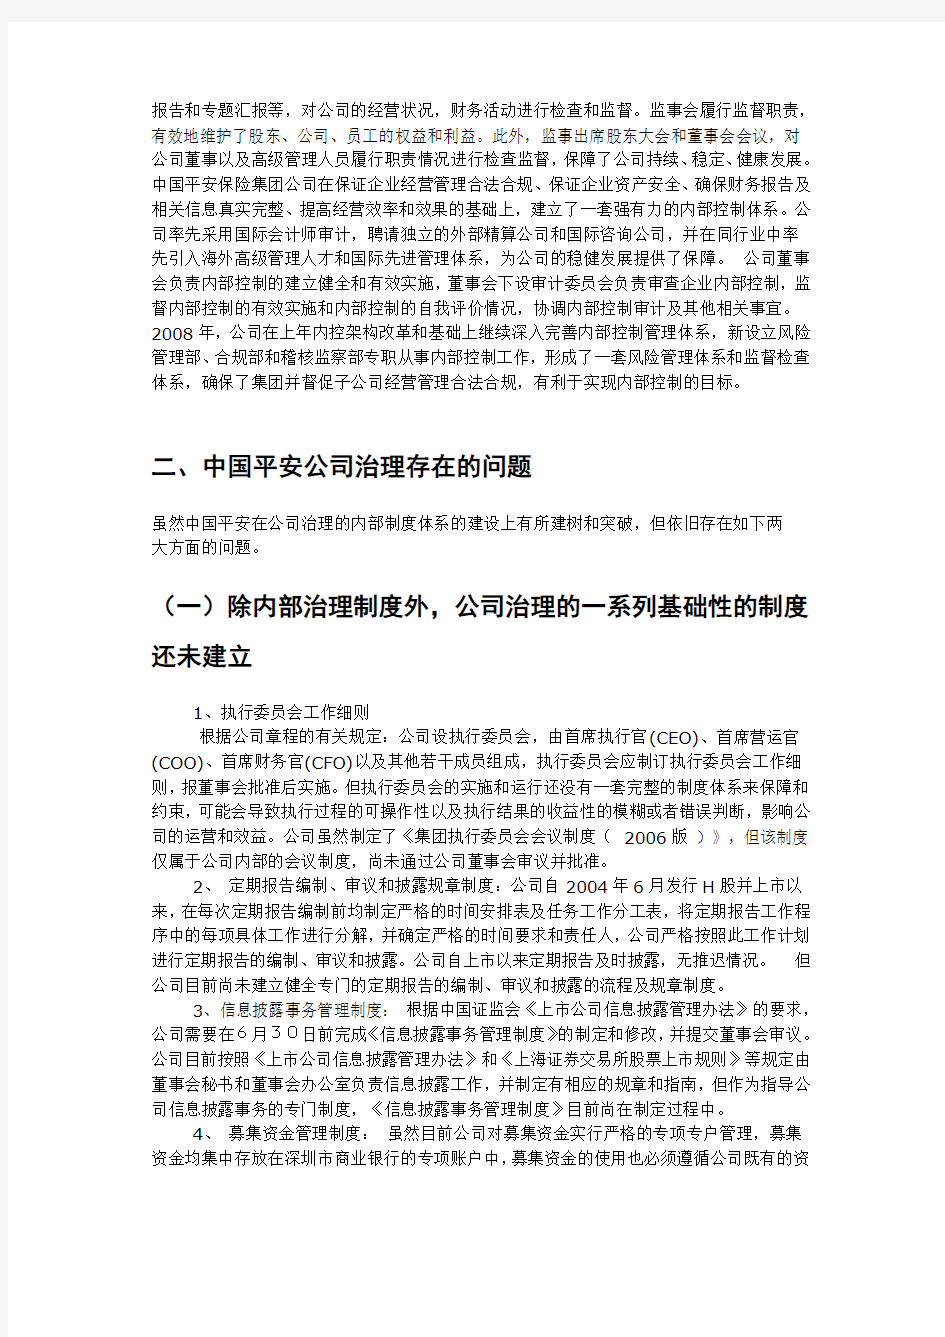 中国平安保险集团公司治理分析